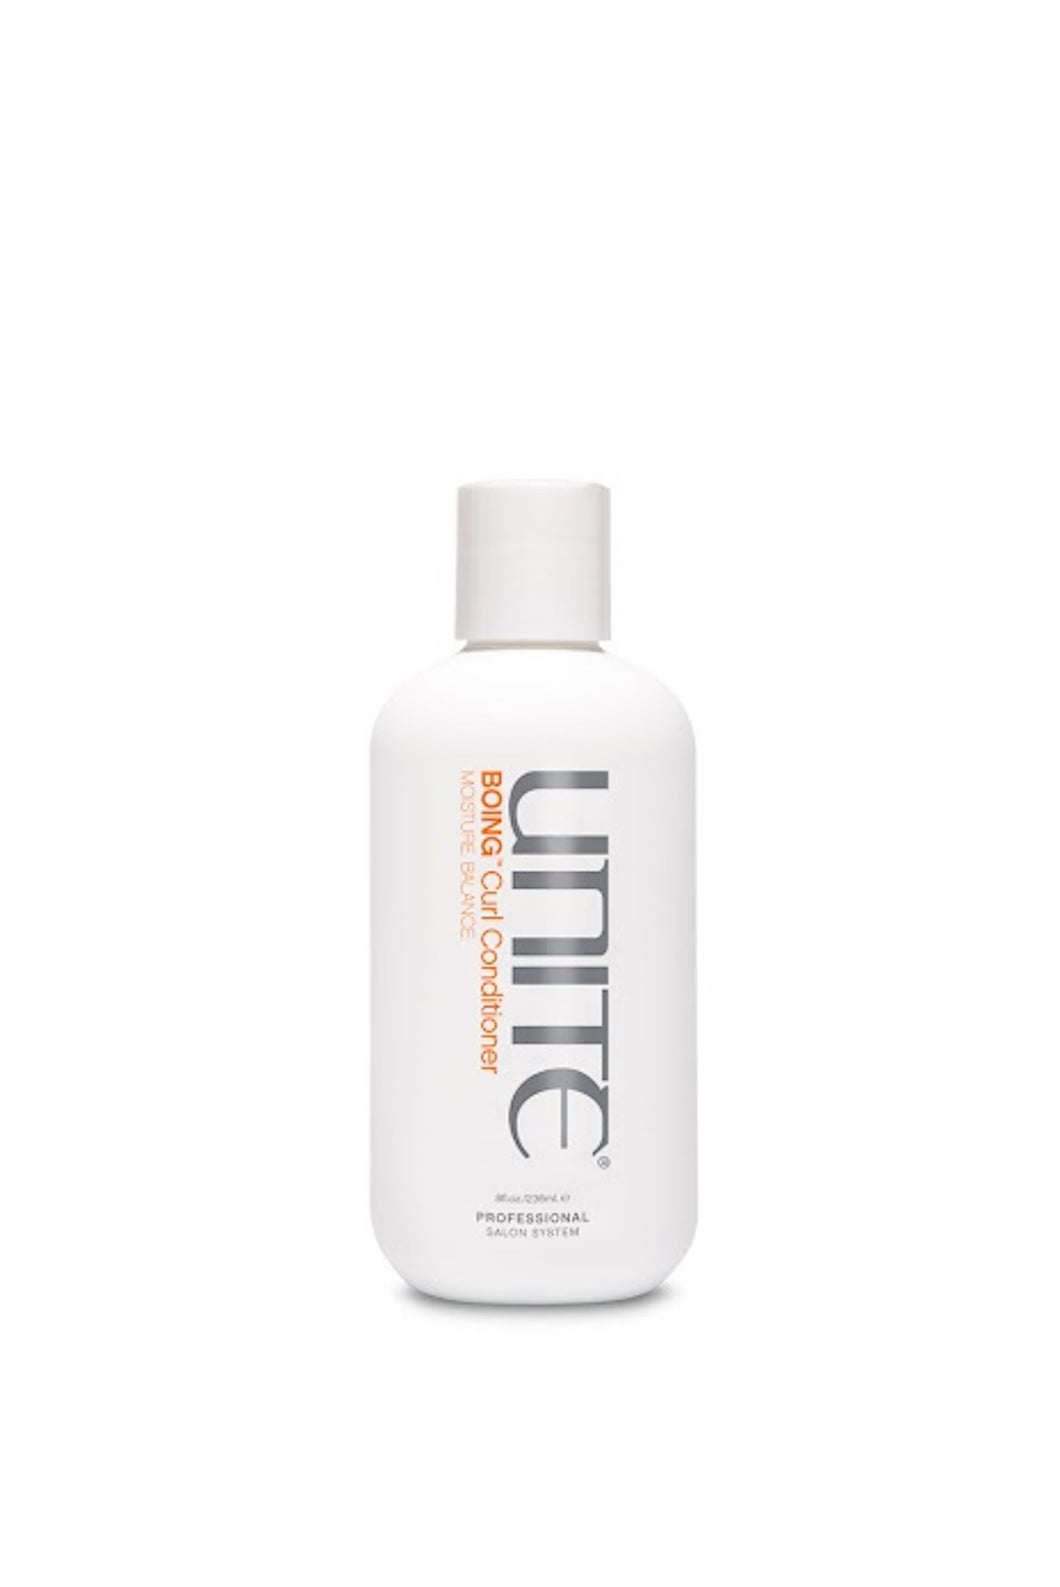 Unite - BOING Curl Conditioner white 8 oz. bottle